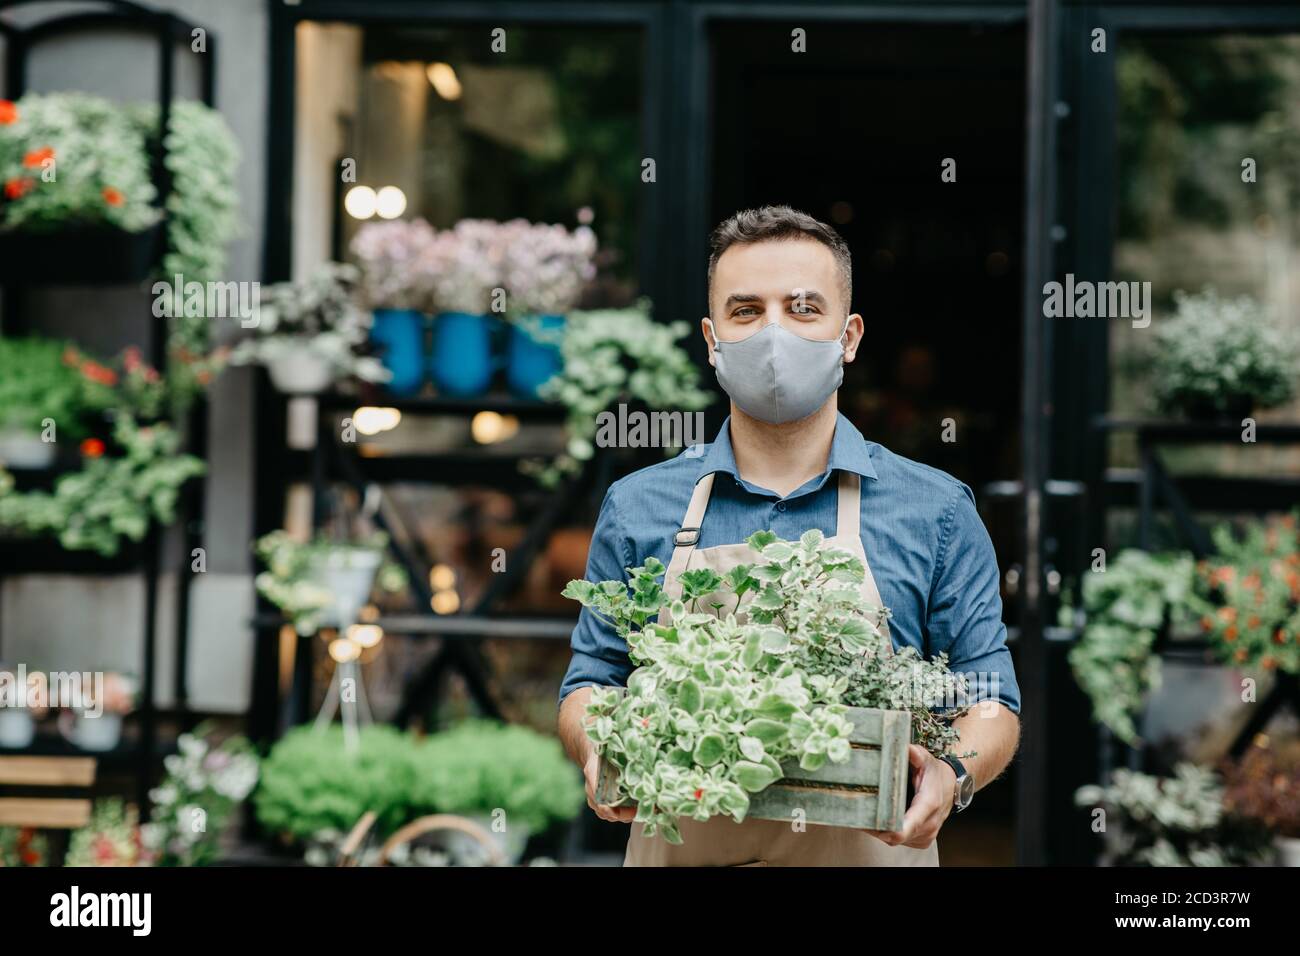 Petite entreprise et début de journée de travail. L'homme dans le masque de protection sort une boîte de plantes à l'extérieur Banque D'Images